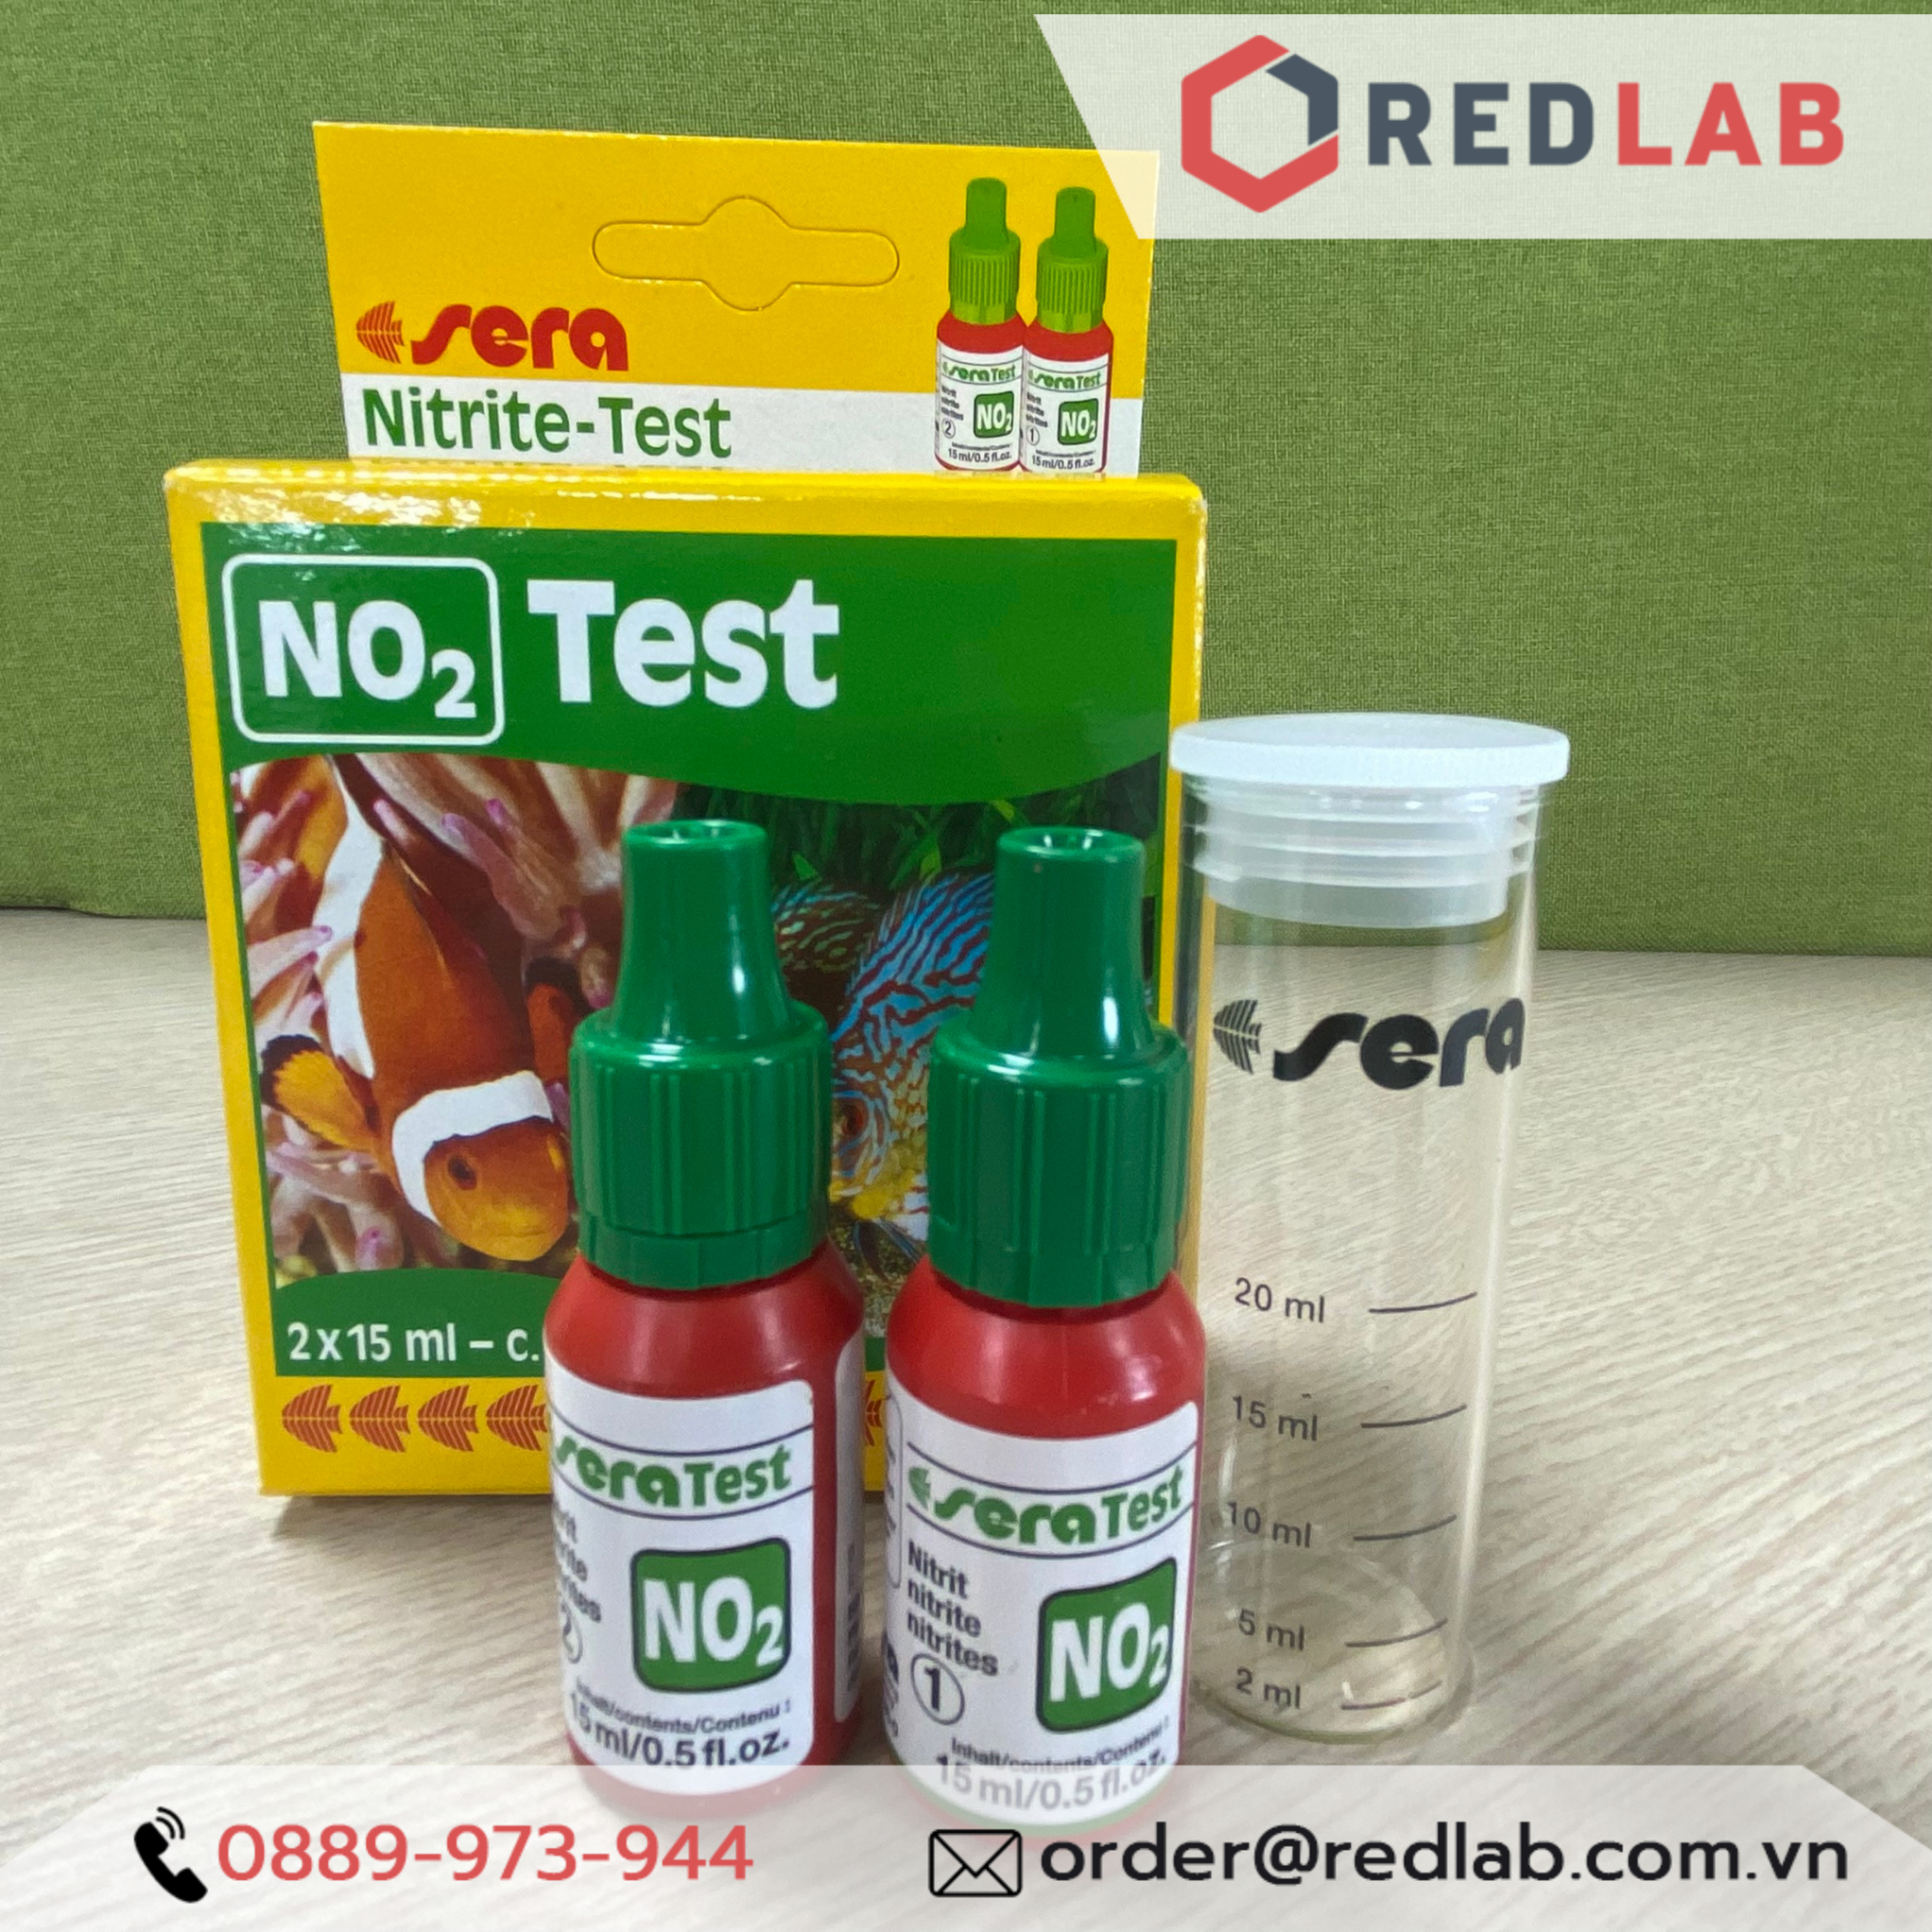 sera nitrite-Test (NO2) 2X15 ml, 0.5 fl.oz. Aquarium Test Kits